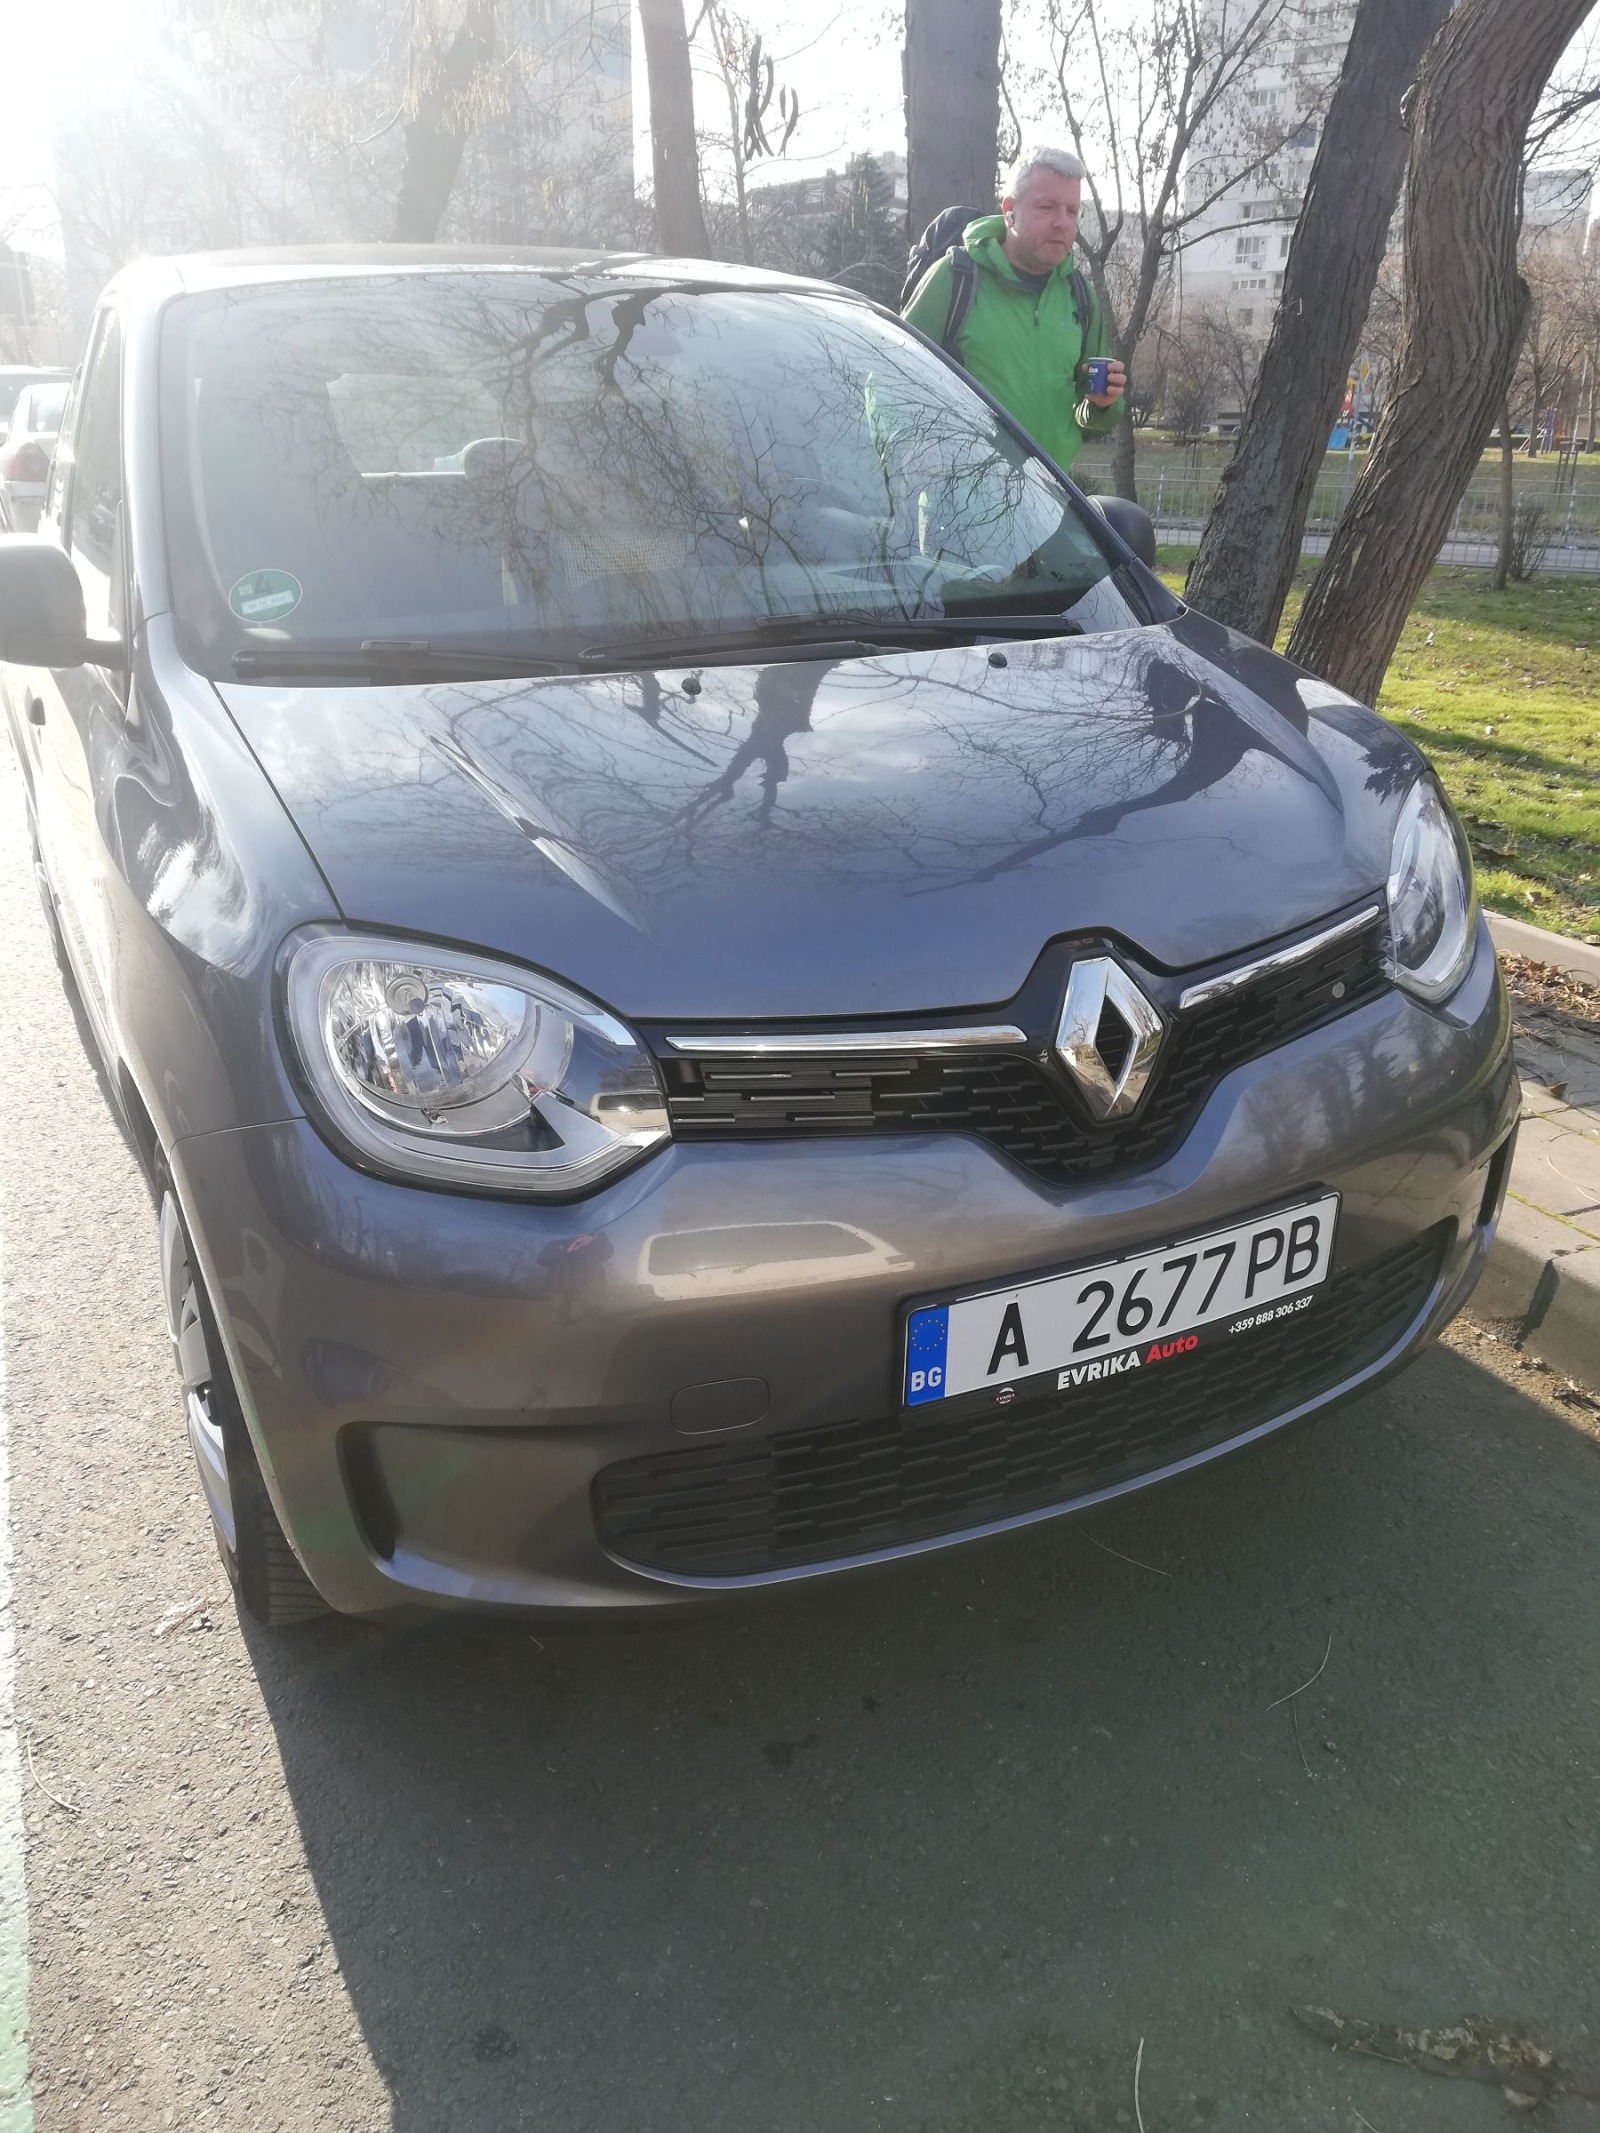 Renault Twingo 1.0 SCe lll EU 6D - изображение 1